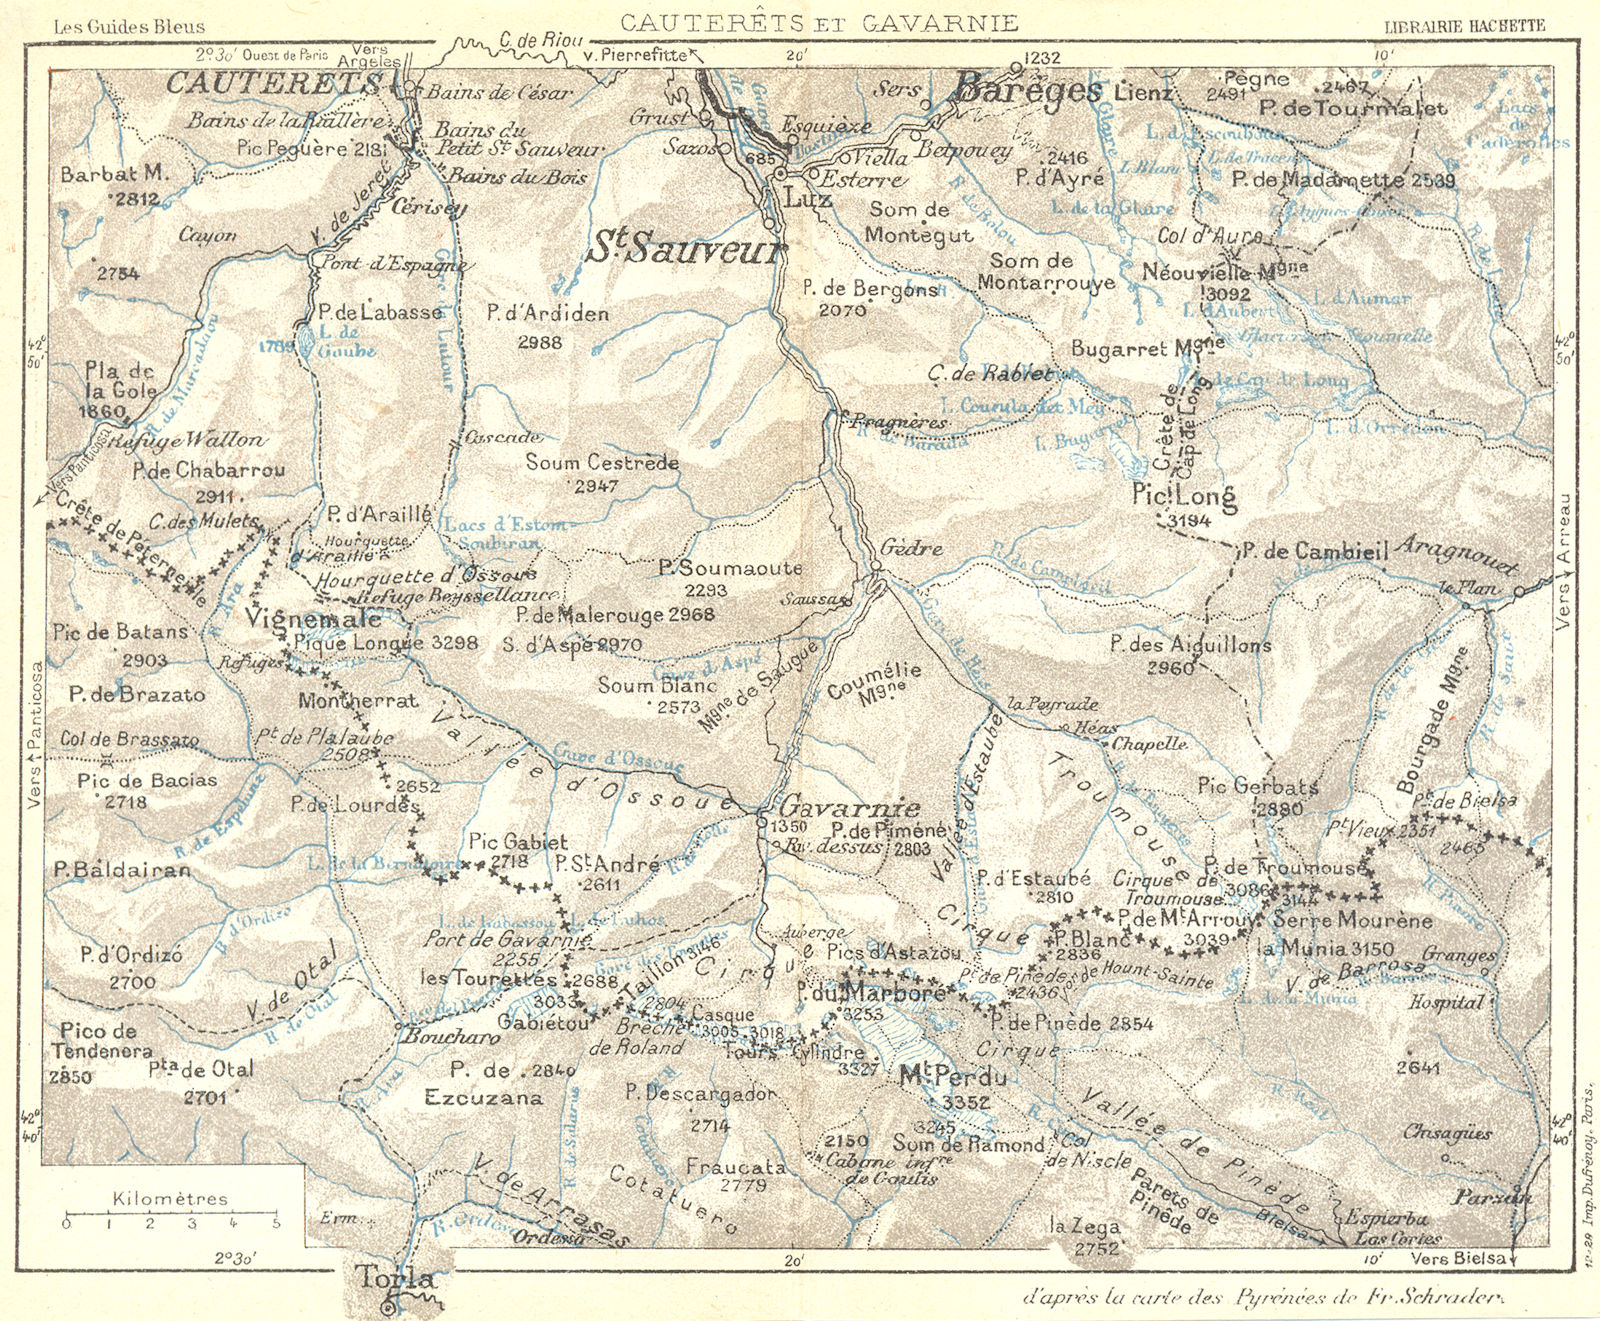 HAUTES-PYRENEES. Cauterets et Gavarnie 1926 old vintage map plan chart